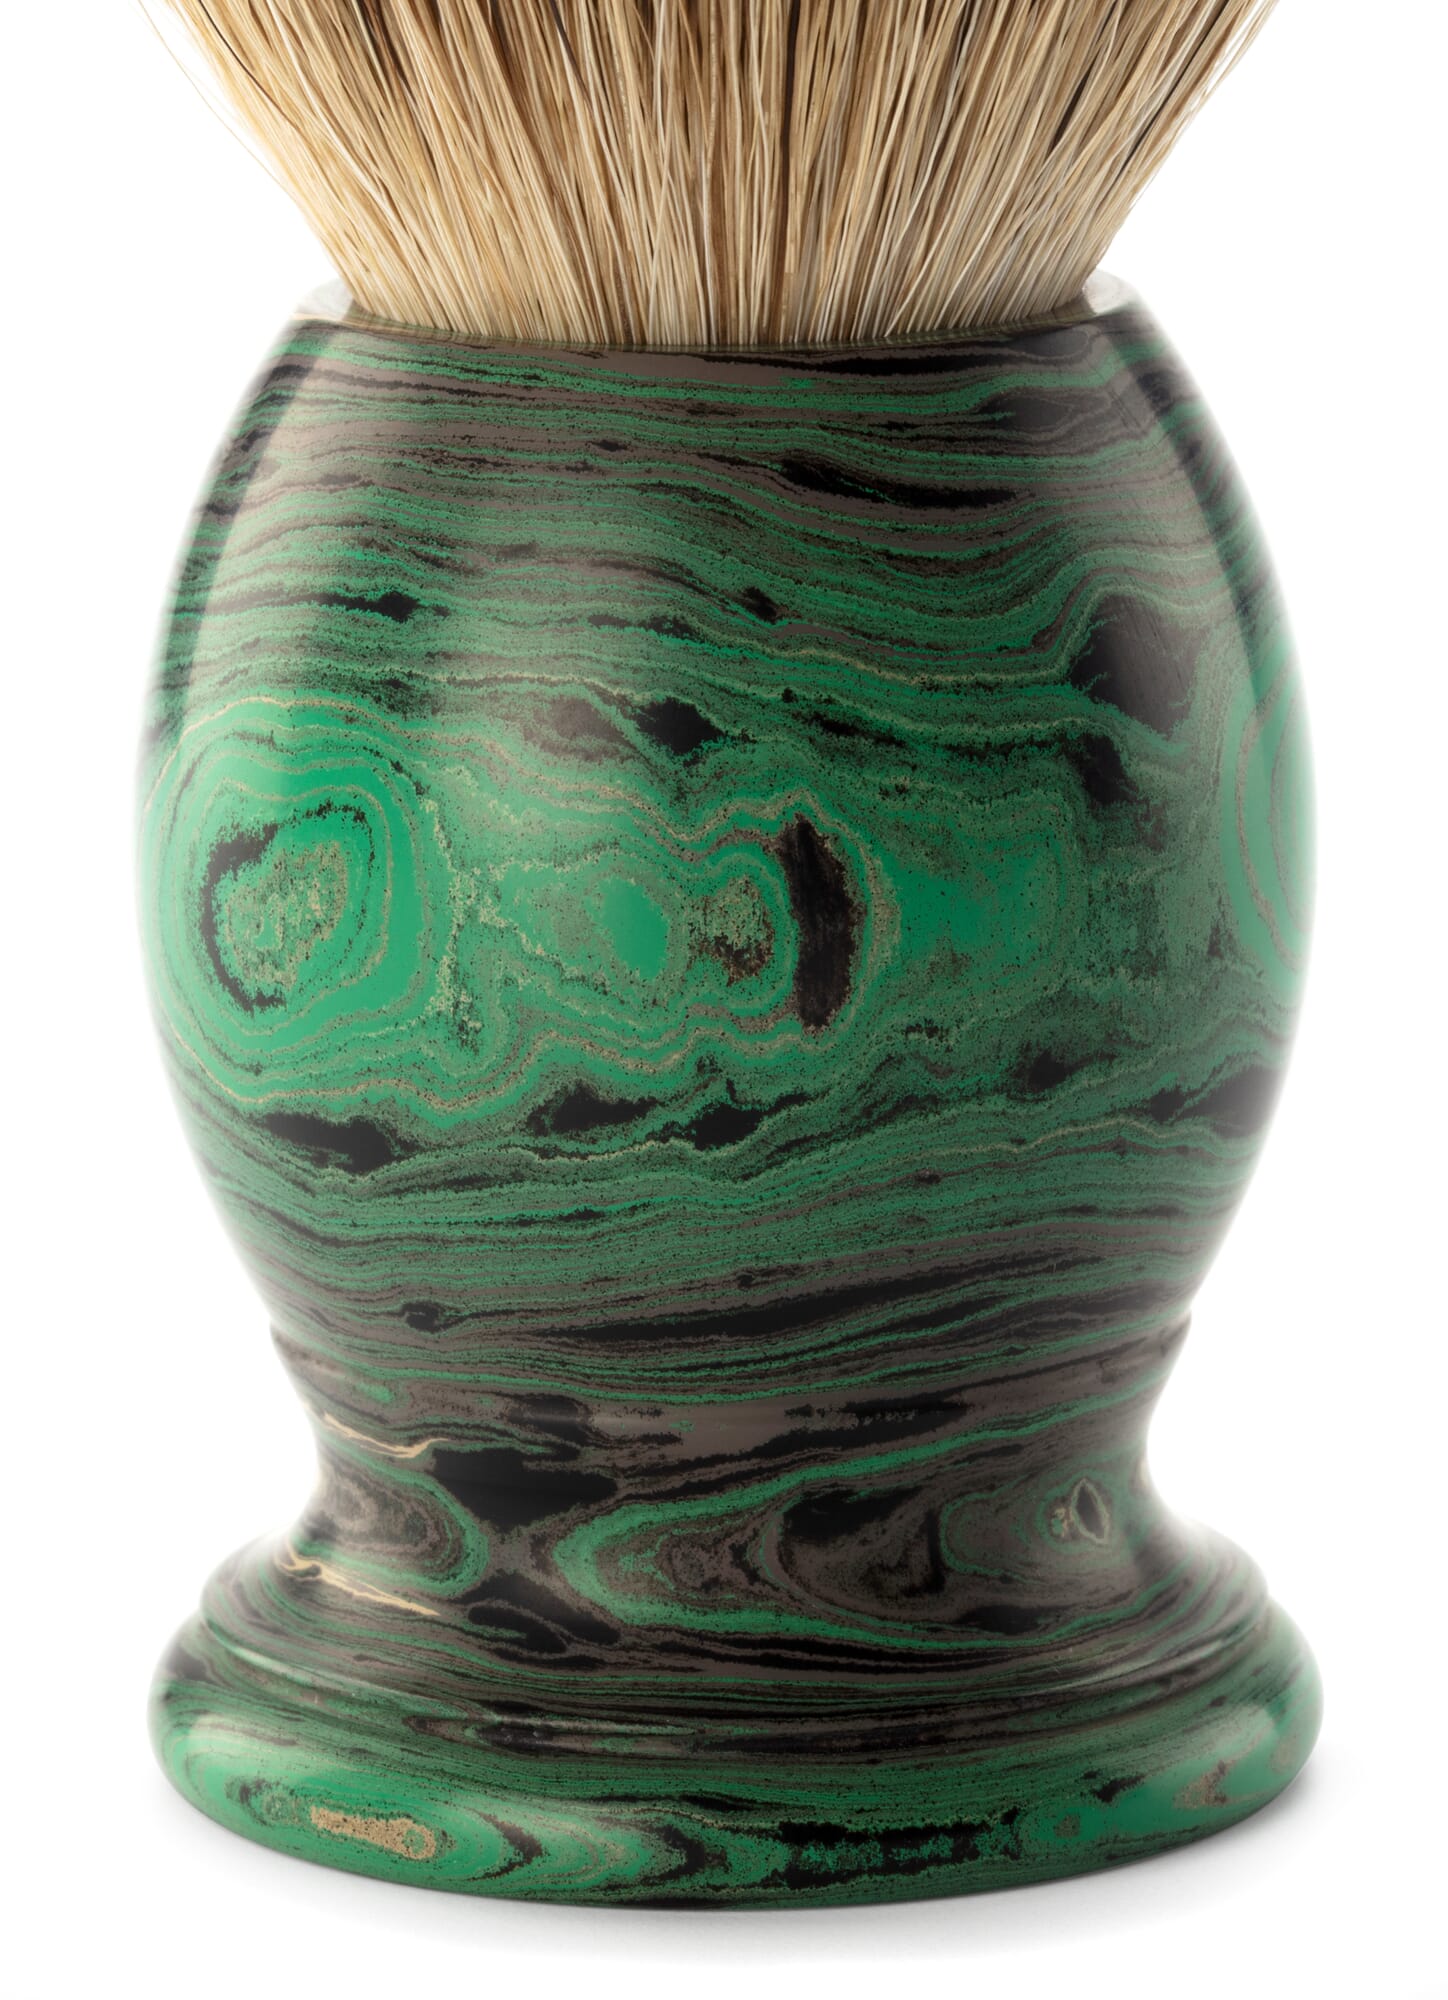 Set Rasierpinsel Dachshaar und Rasierhobel Ebonit mit Ständer, Grün  marmoriert | Manufactum